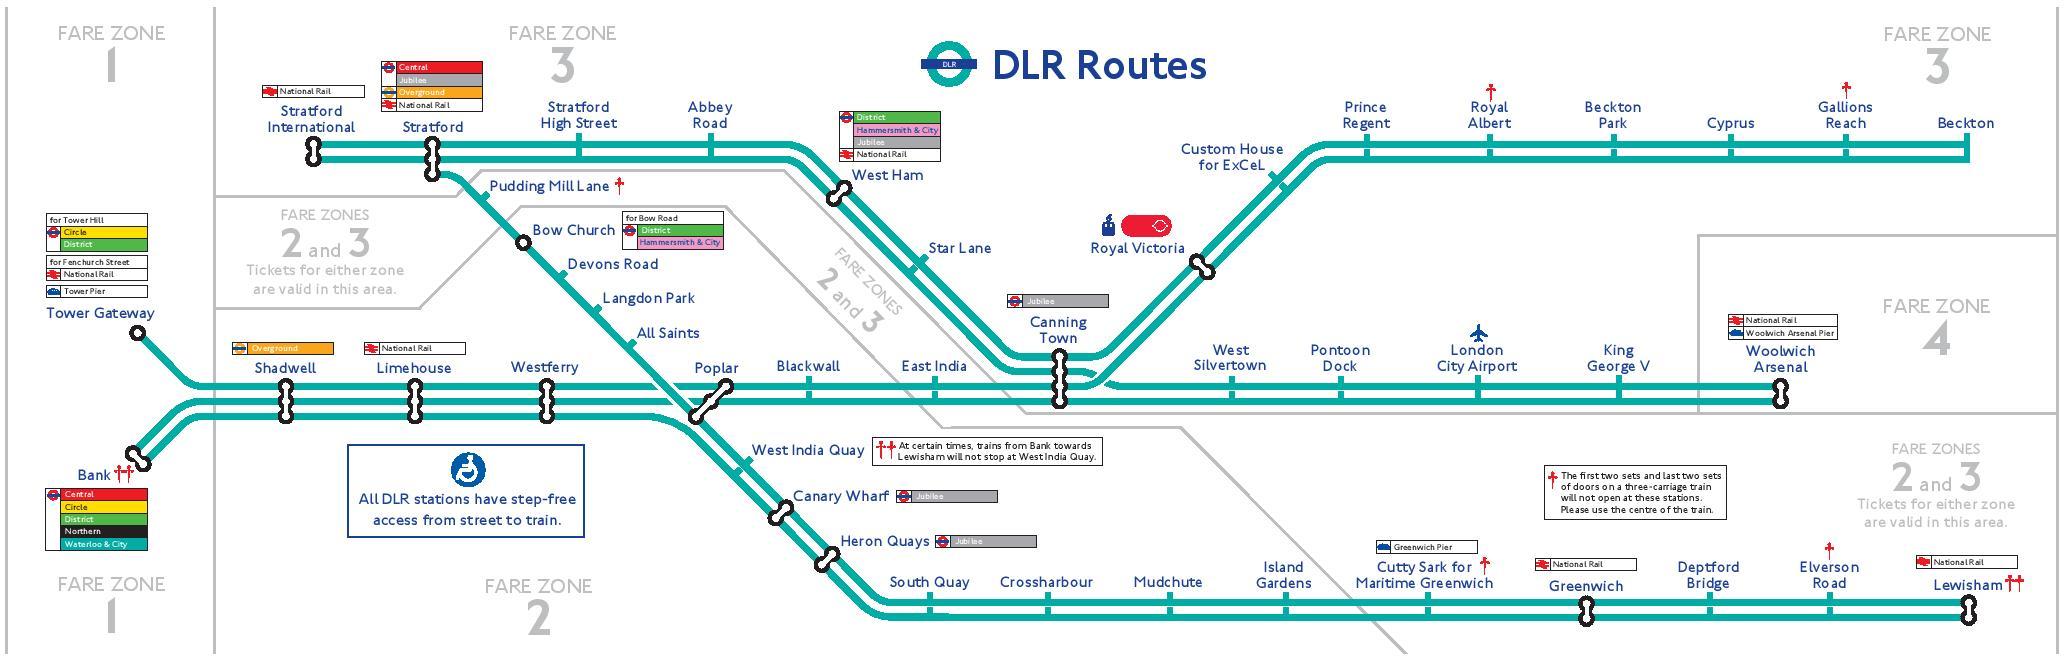 Легкая железная дорога Докландс (DLR)